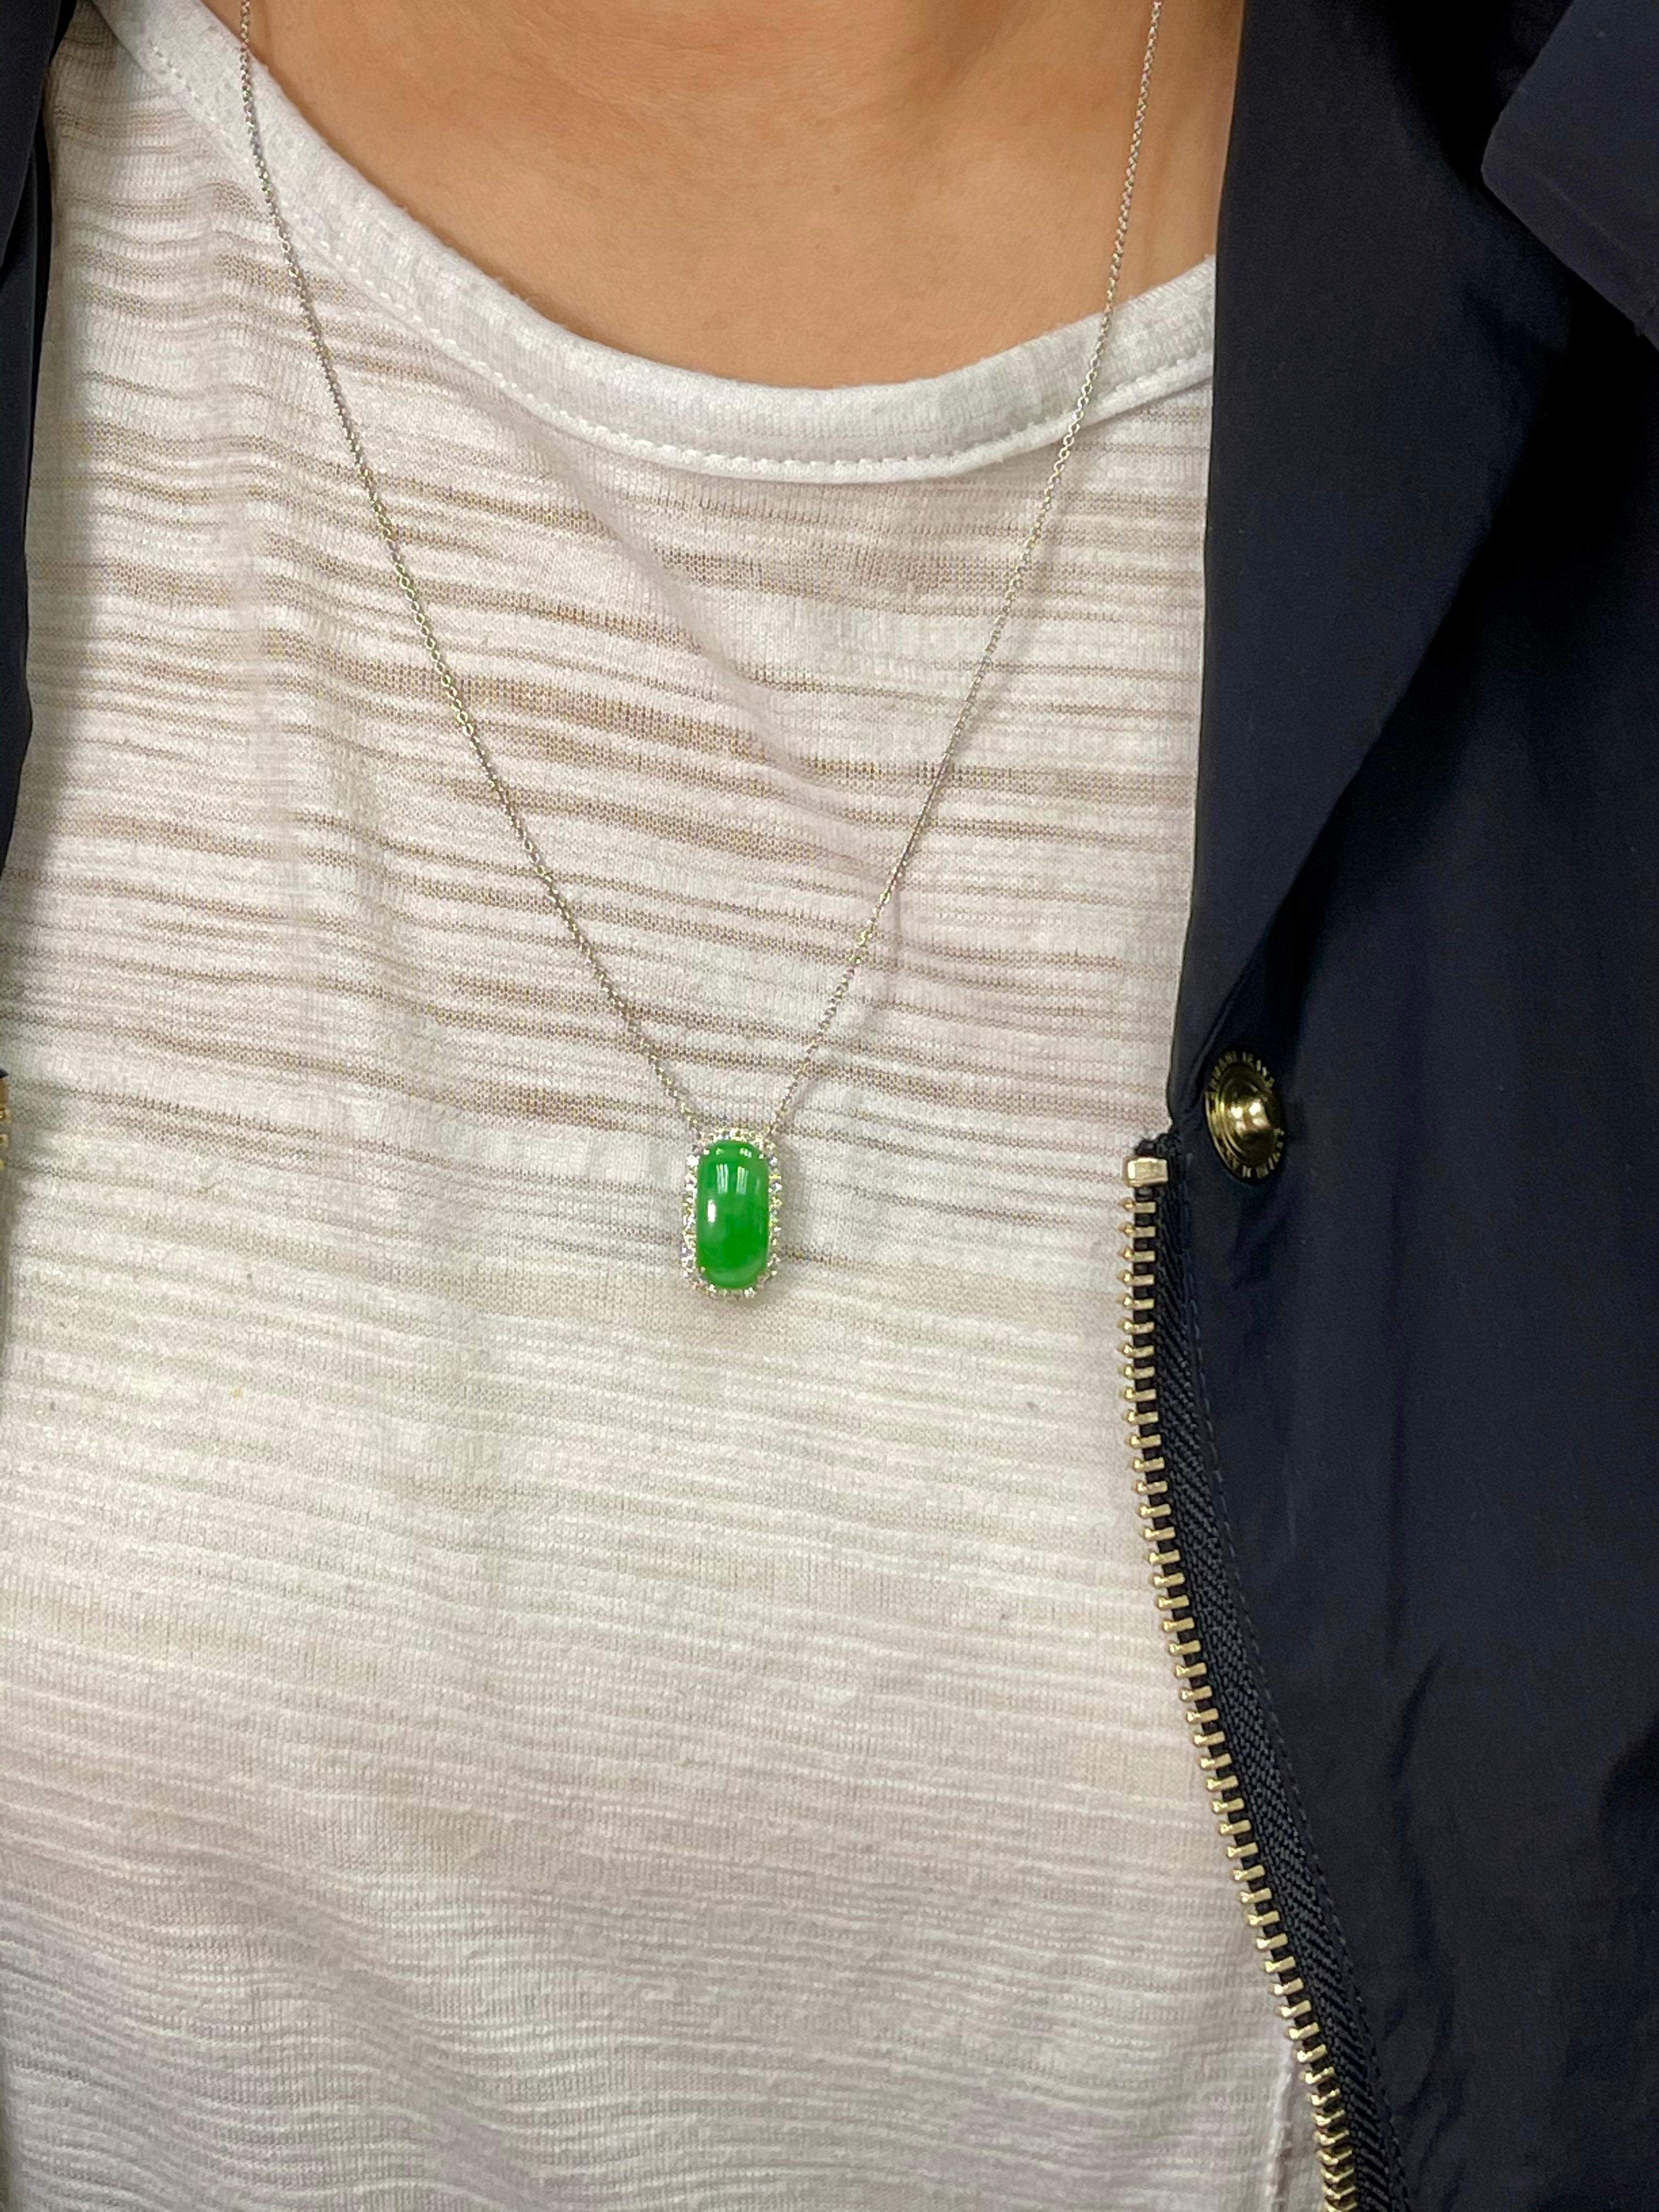 Certified Type A Jadeite Jade Diamond Pendant Drop Necklace, Apple Green Color For Sale 3